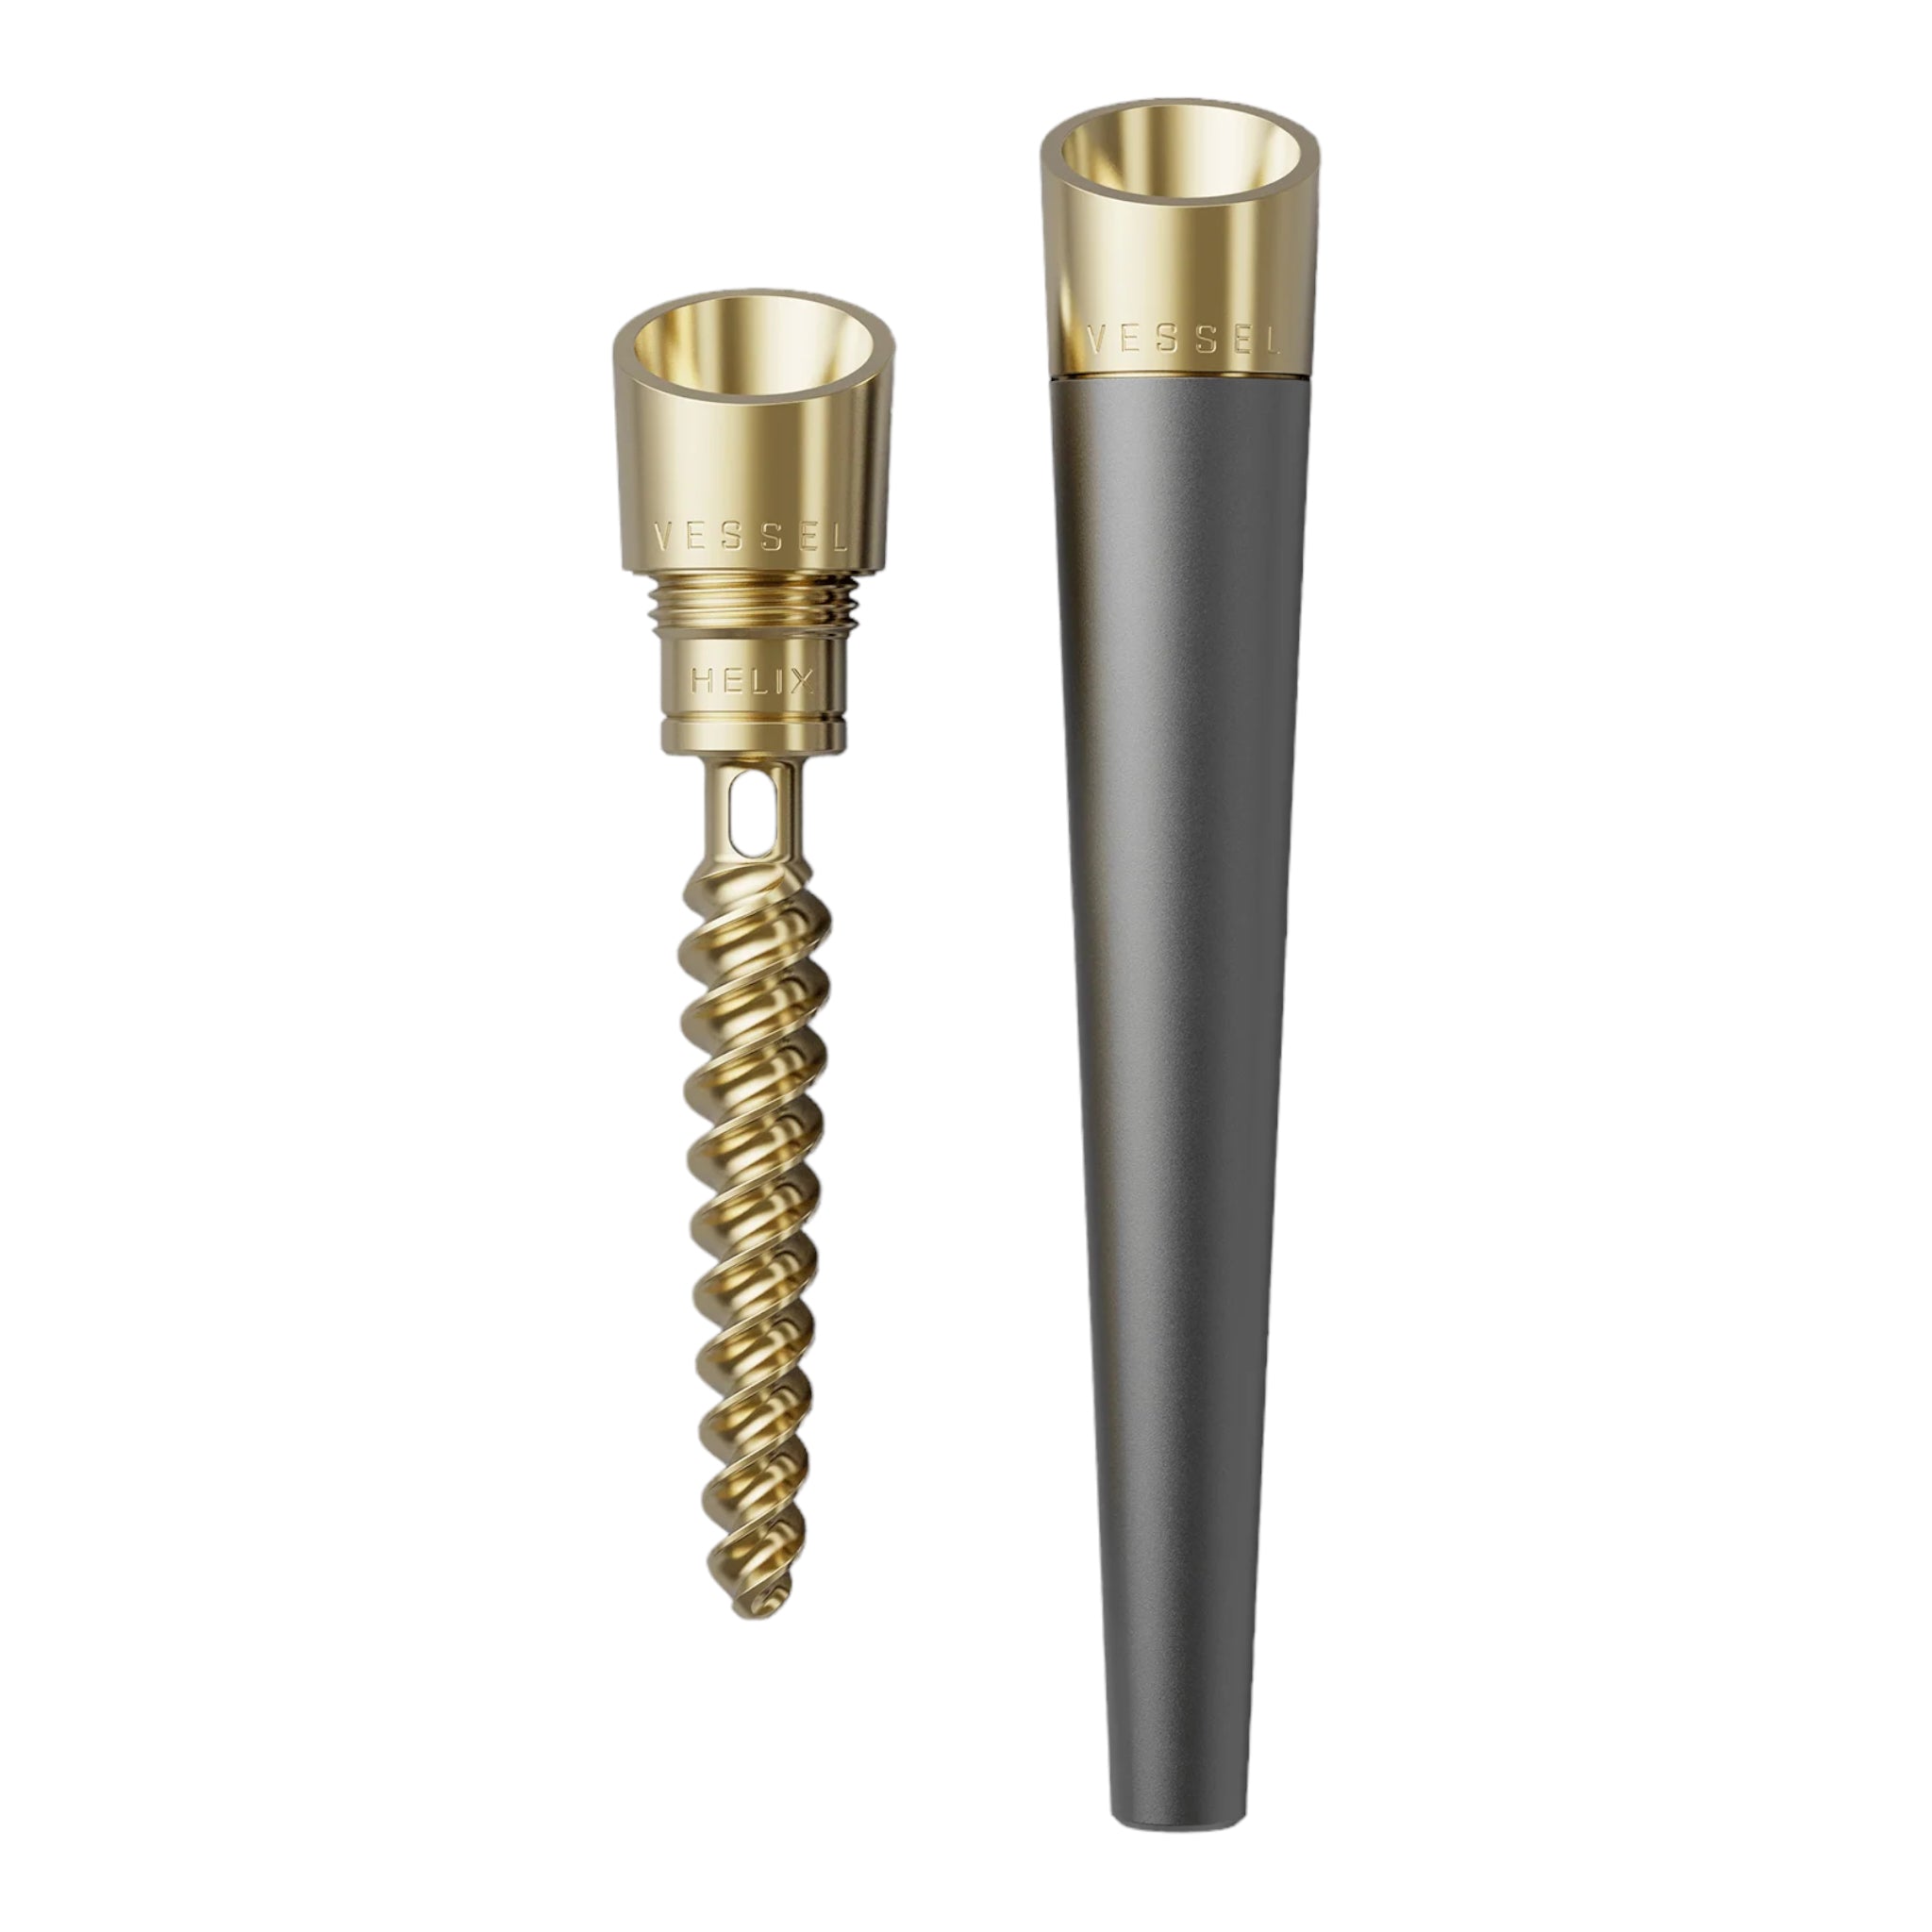 Vessel - Cone. Helix Series Metal Hand Pipe Gunmetal